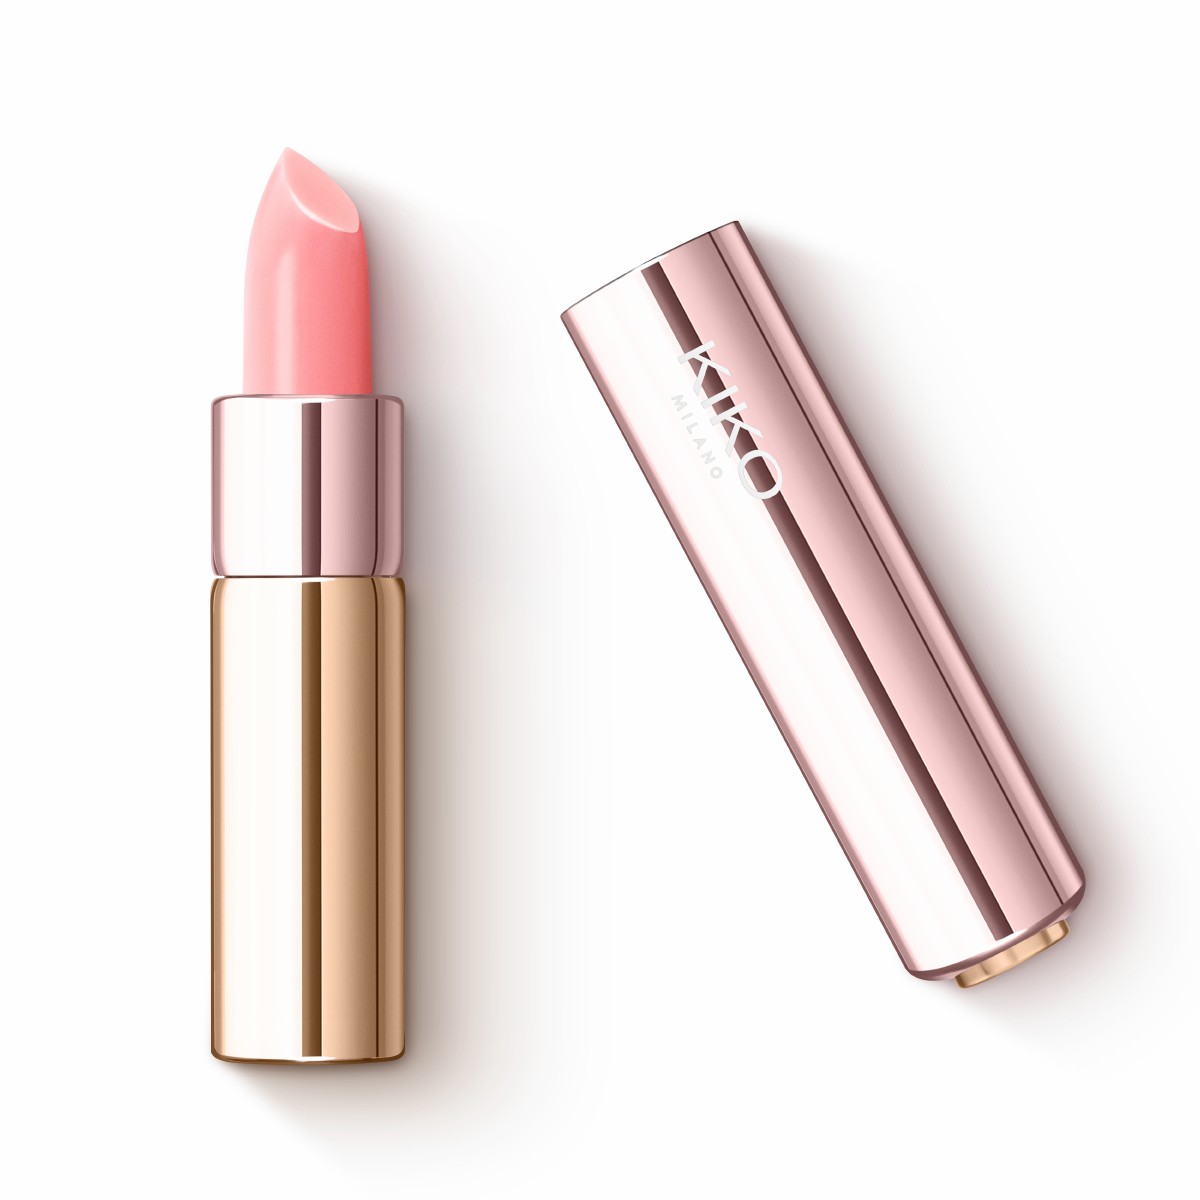 Помада Kiko Milano Ph glow lipstick 2.8 г помада для губ kiko milano smart fusion lipstick 433 светло коричнево розовый 3 г